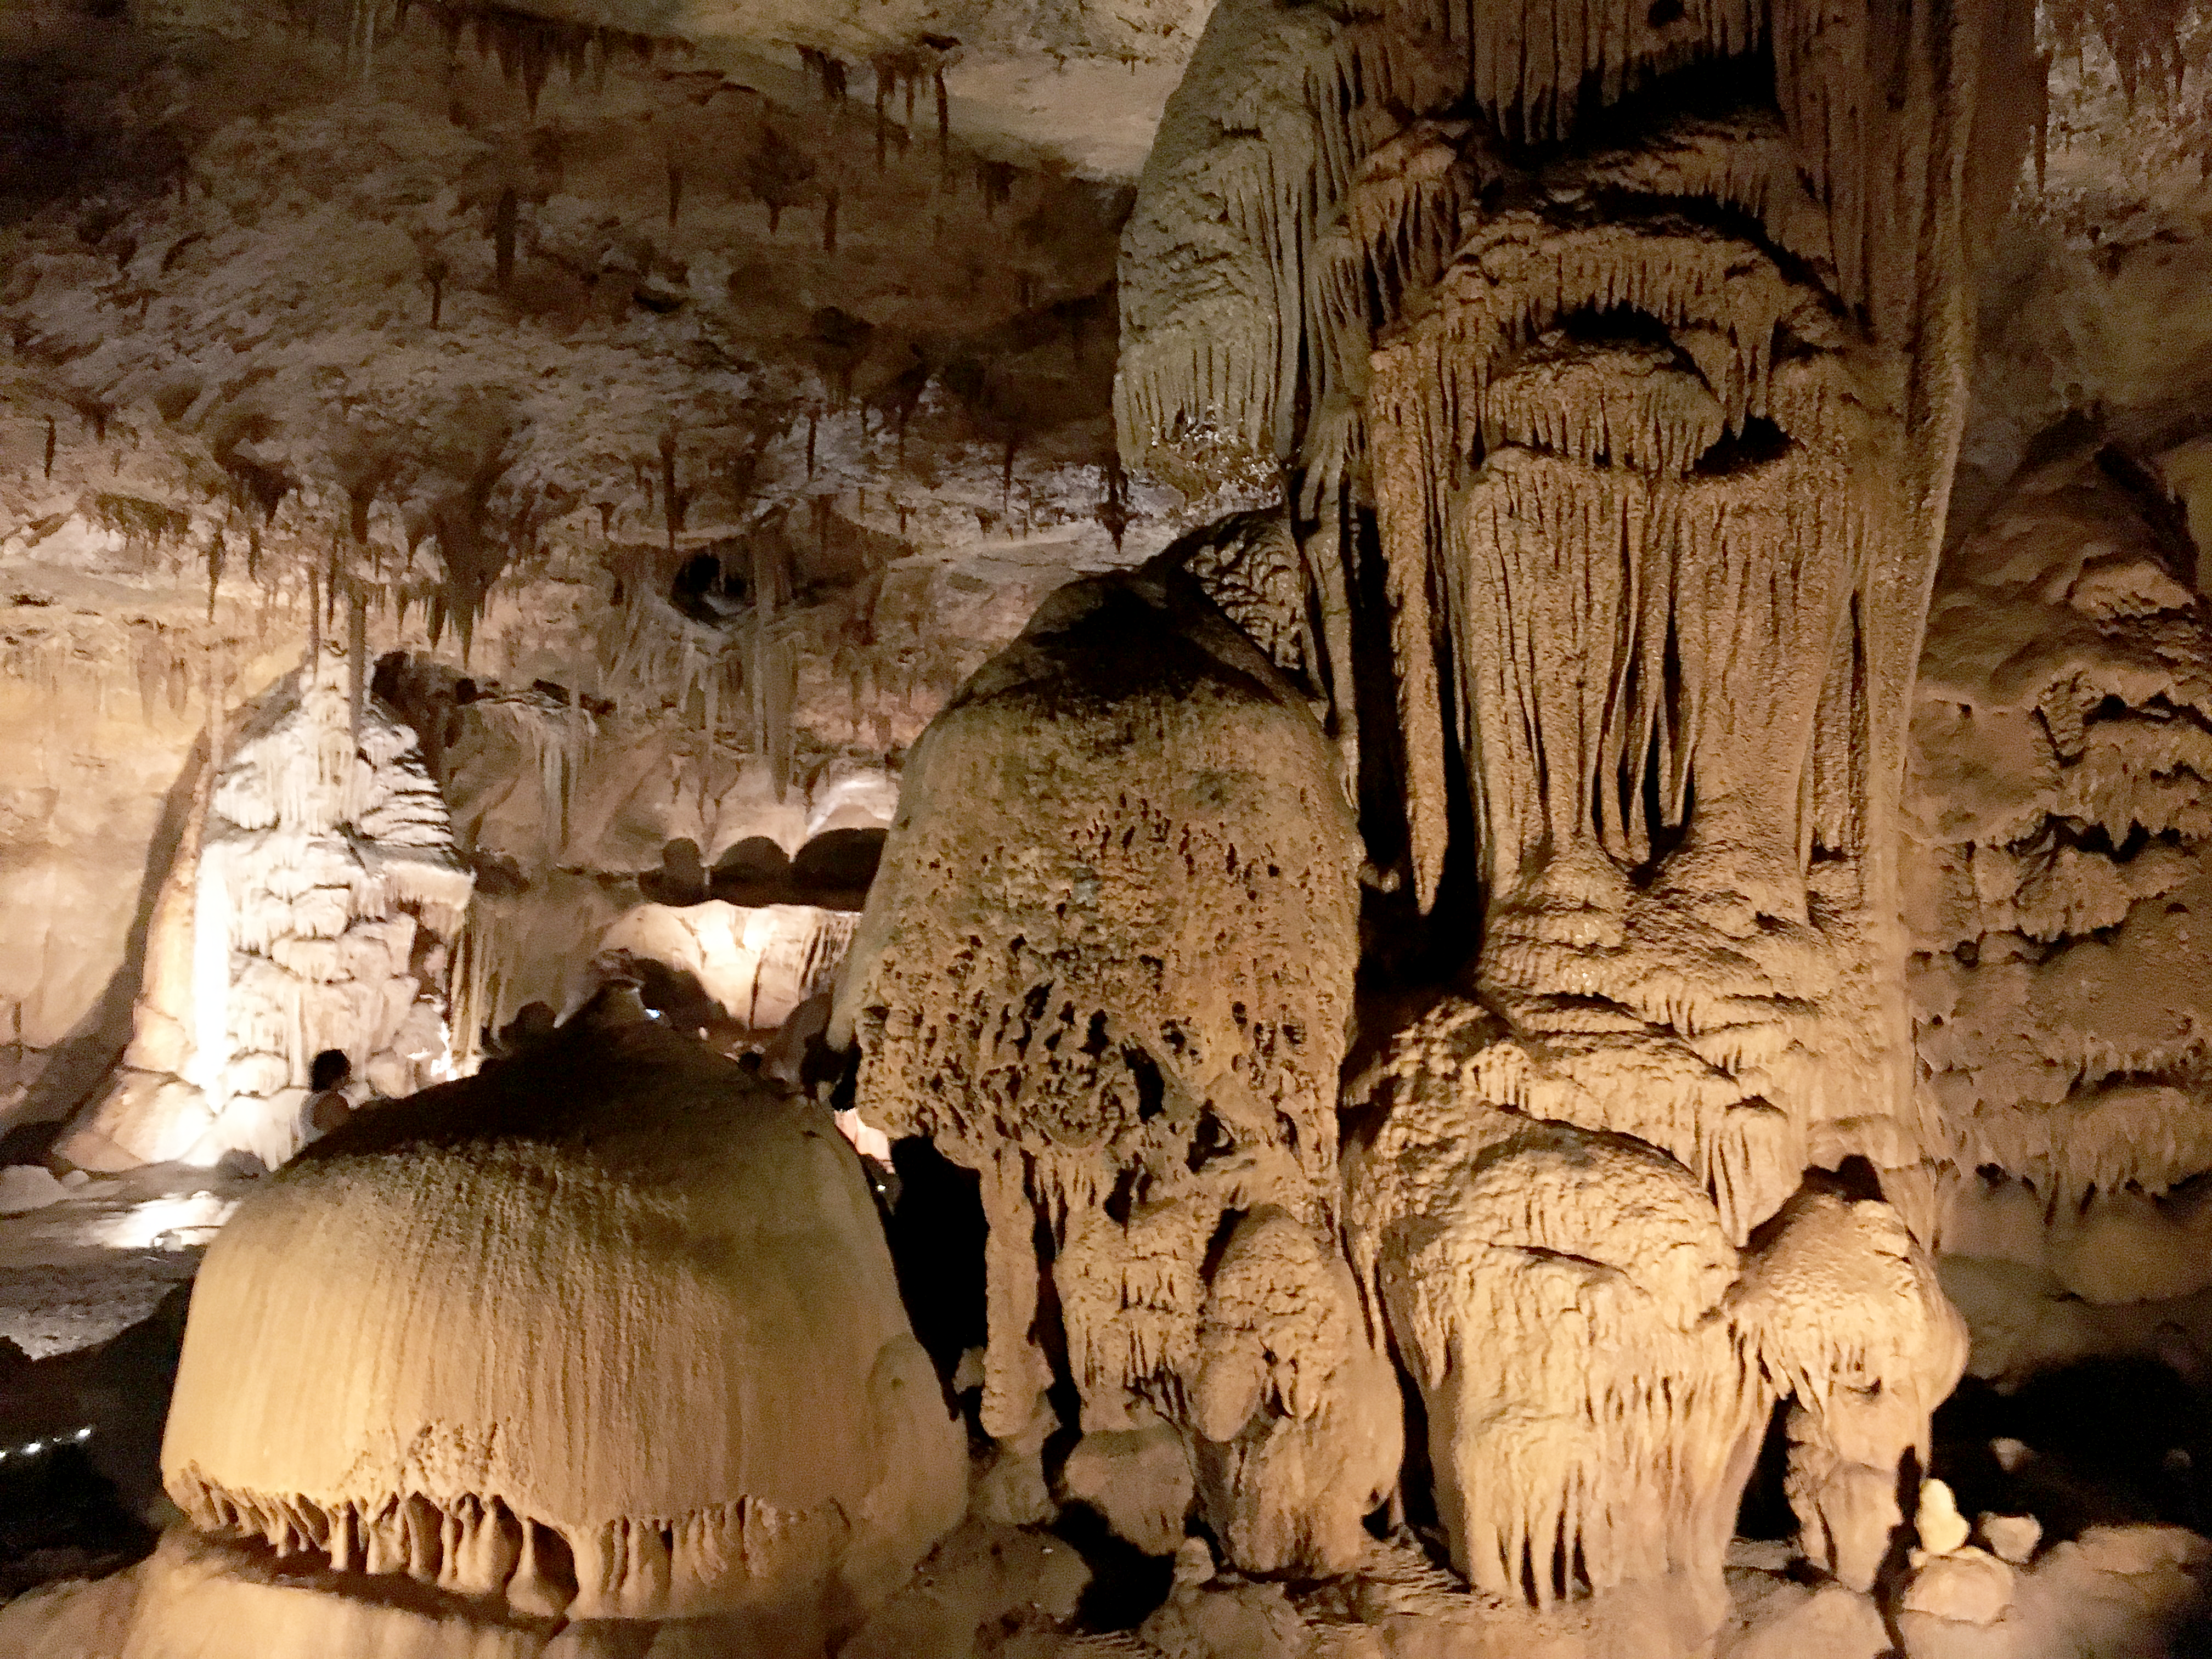 A Magical, Musical Cave